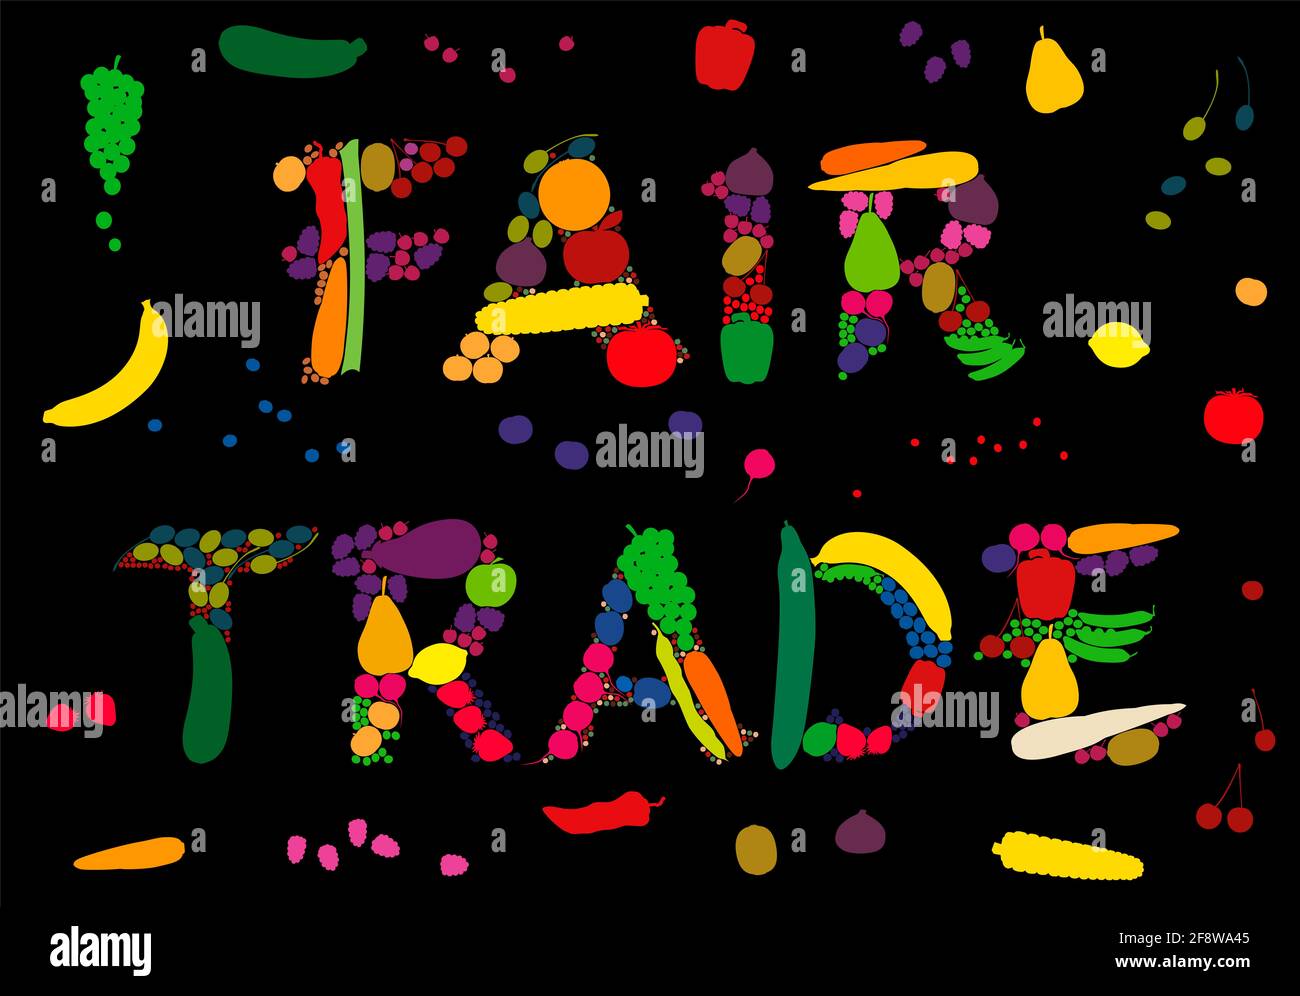 Fair-Trade-Symbol mit Obst und Gemüse wie Bananen, Orangen, Zitronen, Äpfeln, Trauben, Oliven, Birnen, Kiwis, Gurken, Karotten, Paprika. Stockfoto